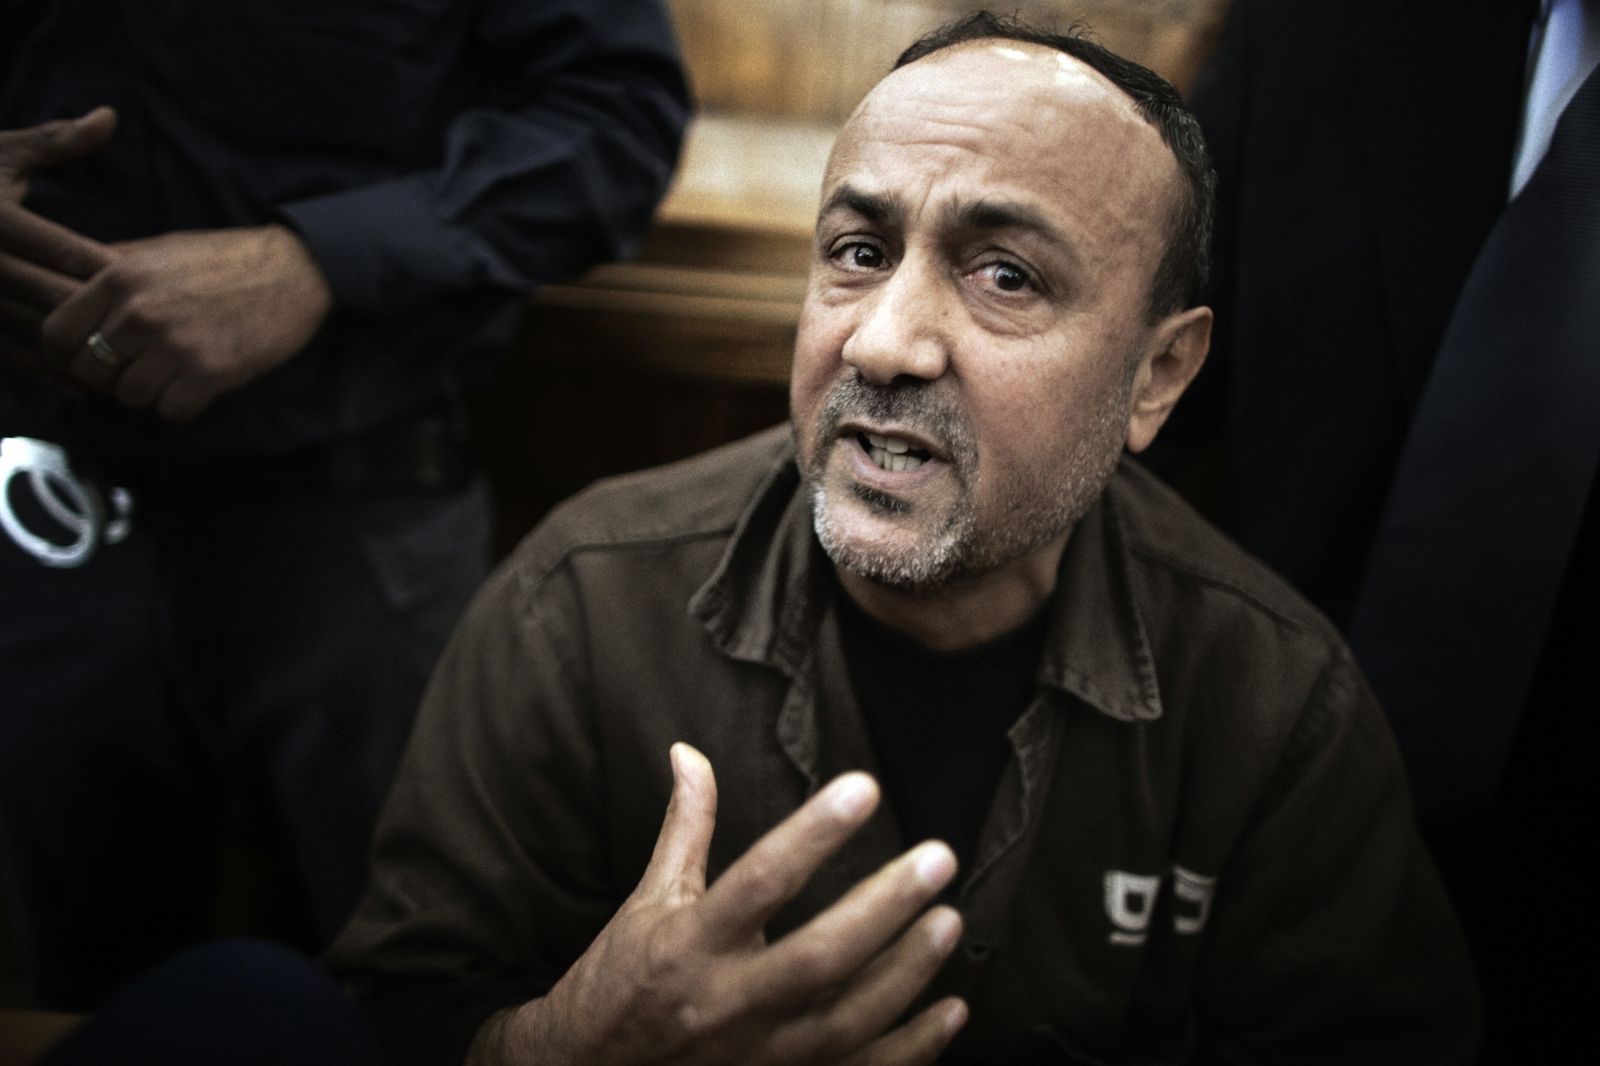 الاسير مروان البرغوثي يدخل بحالة صحية خطرة في سجون الاحتلال